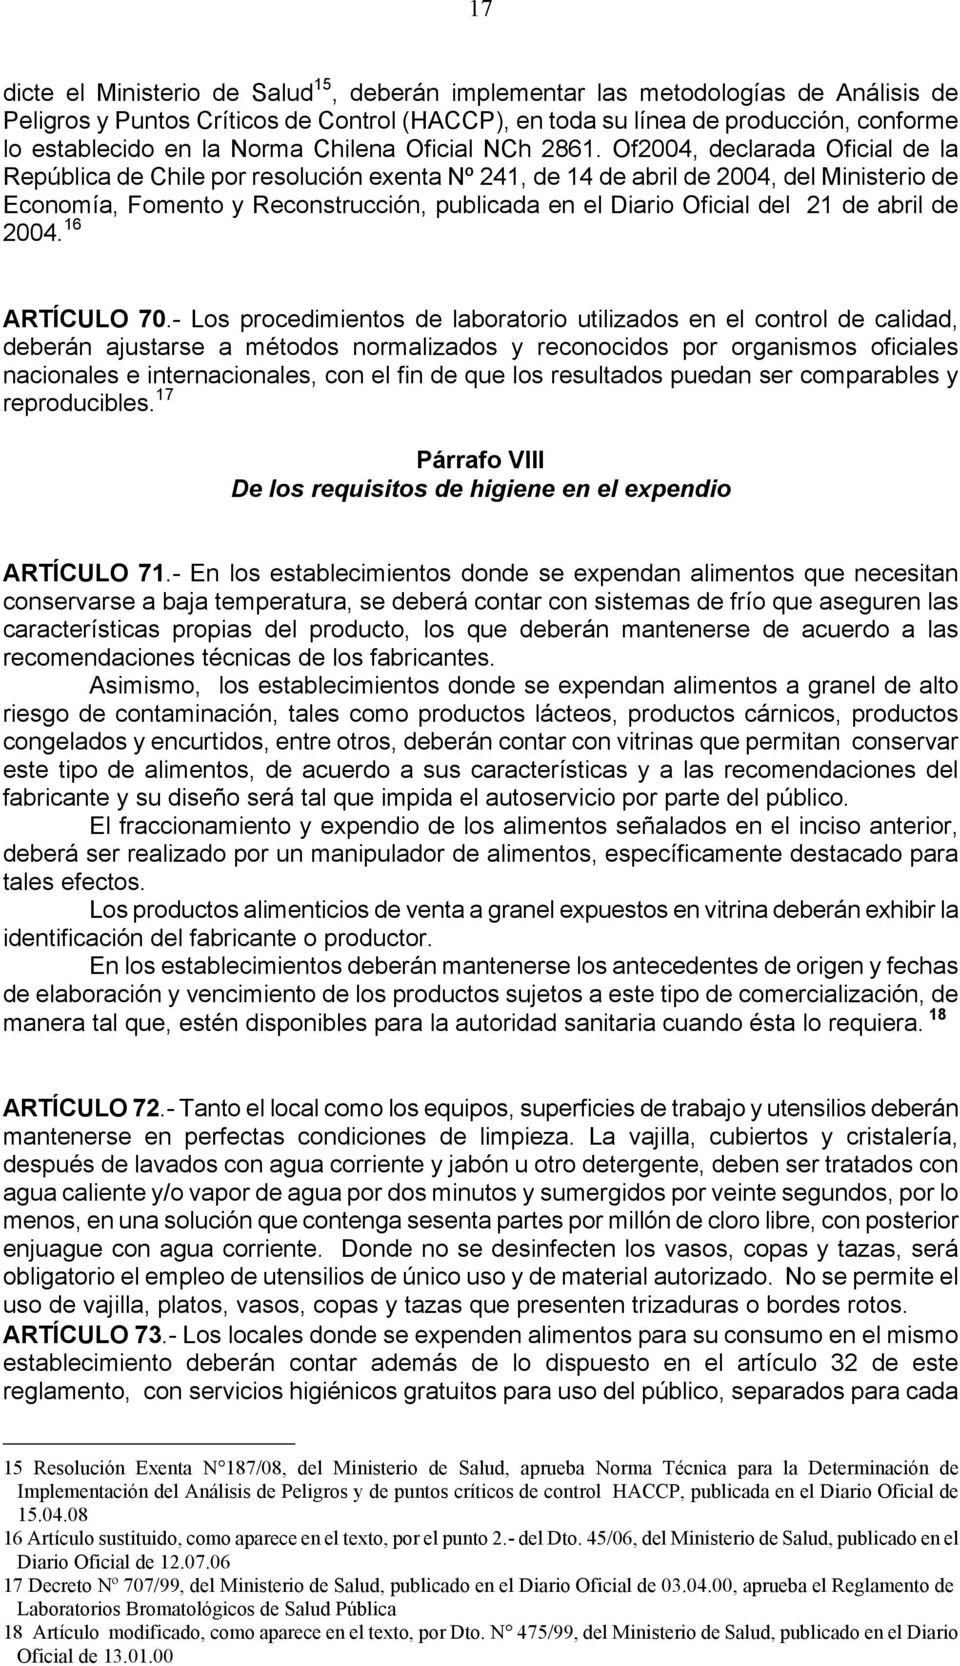 Of004, declarada Oficial de la República de Chile por resolución exenta Nº 41, de 14 de abril de 004, del Ministerio de Economía, Fomento y Reconstrucción, publicada en el Diario Oficial del 1 de